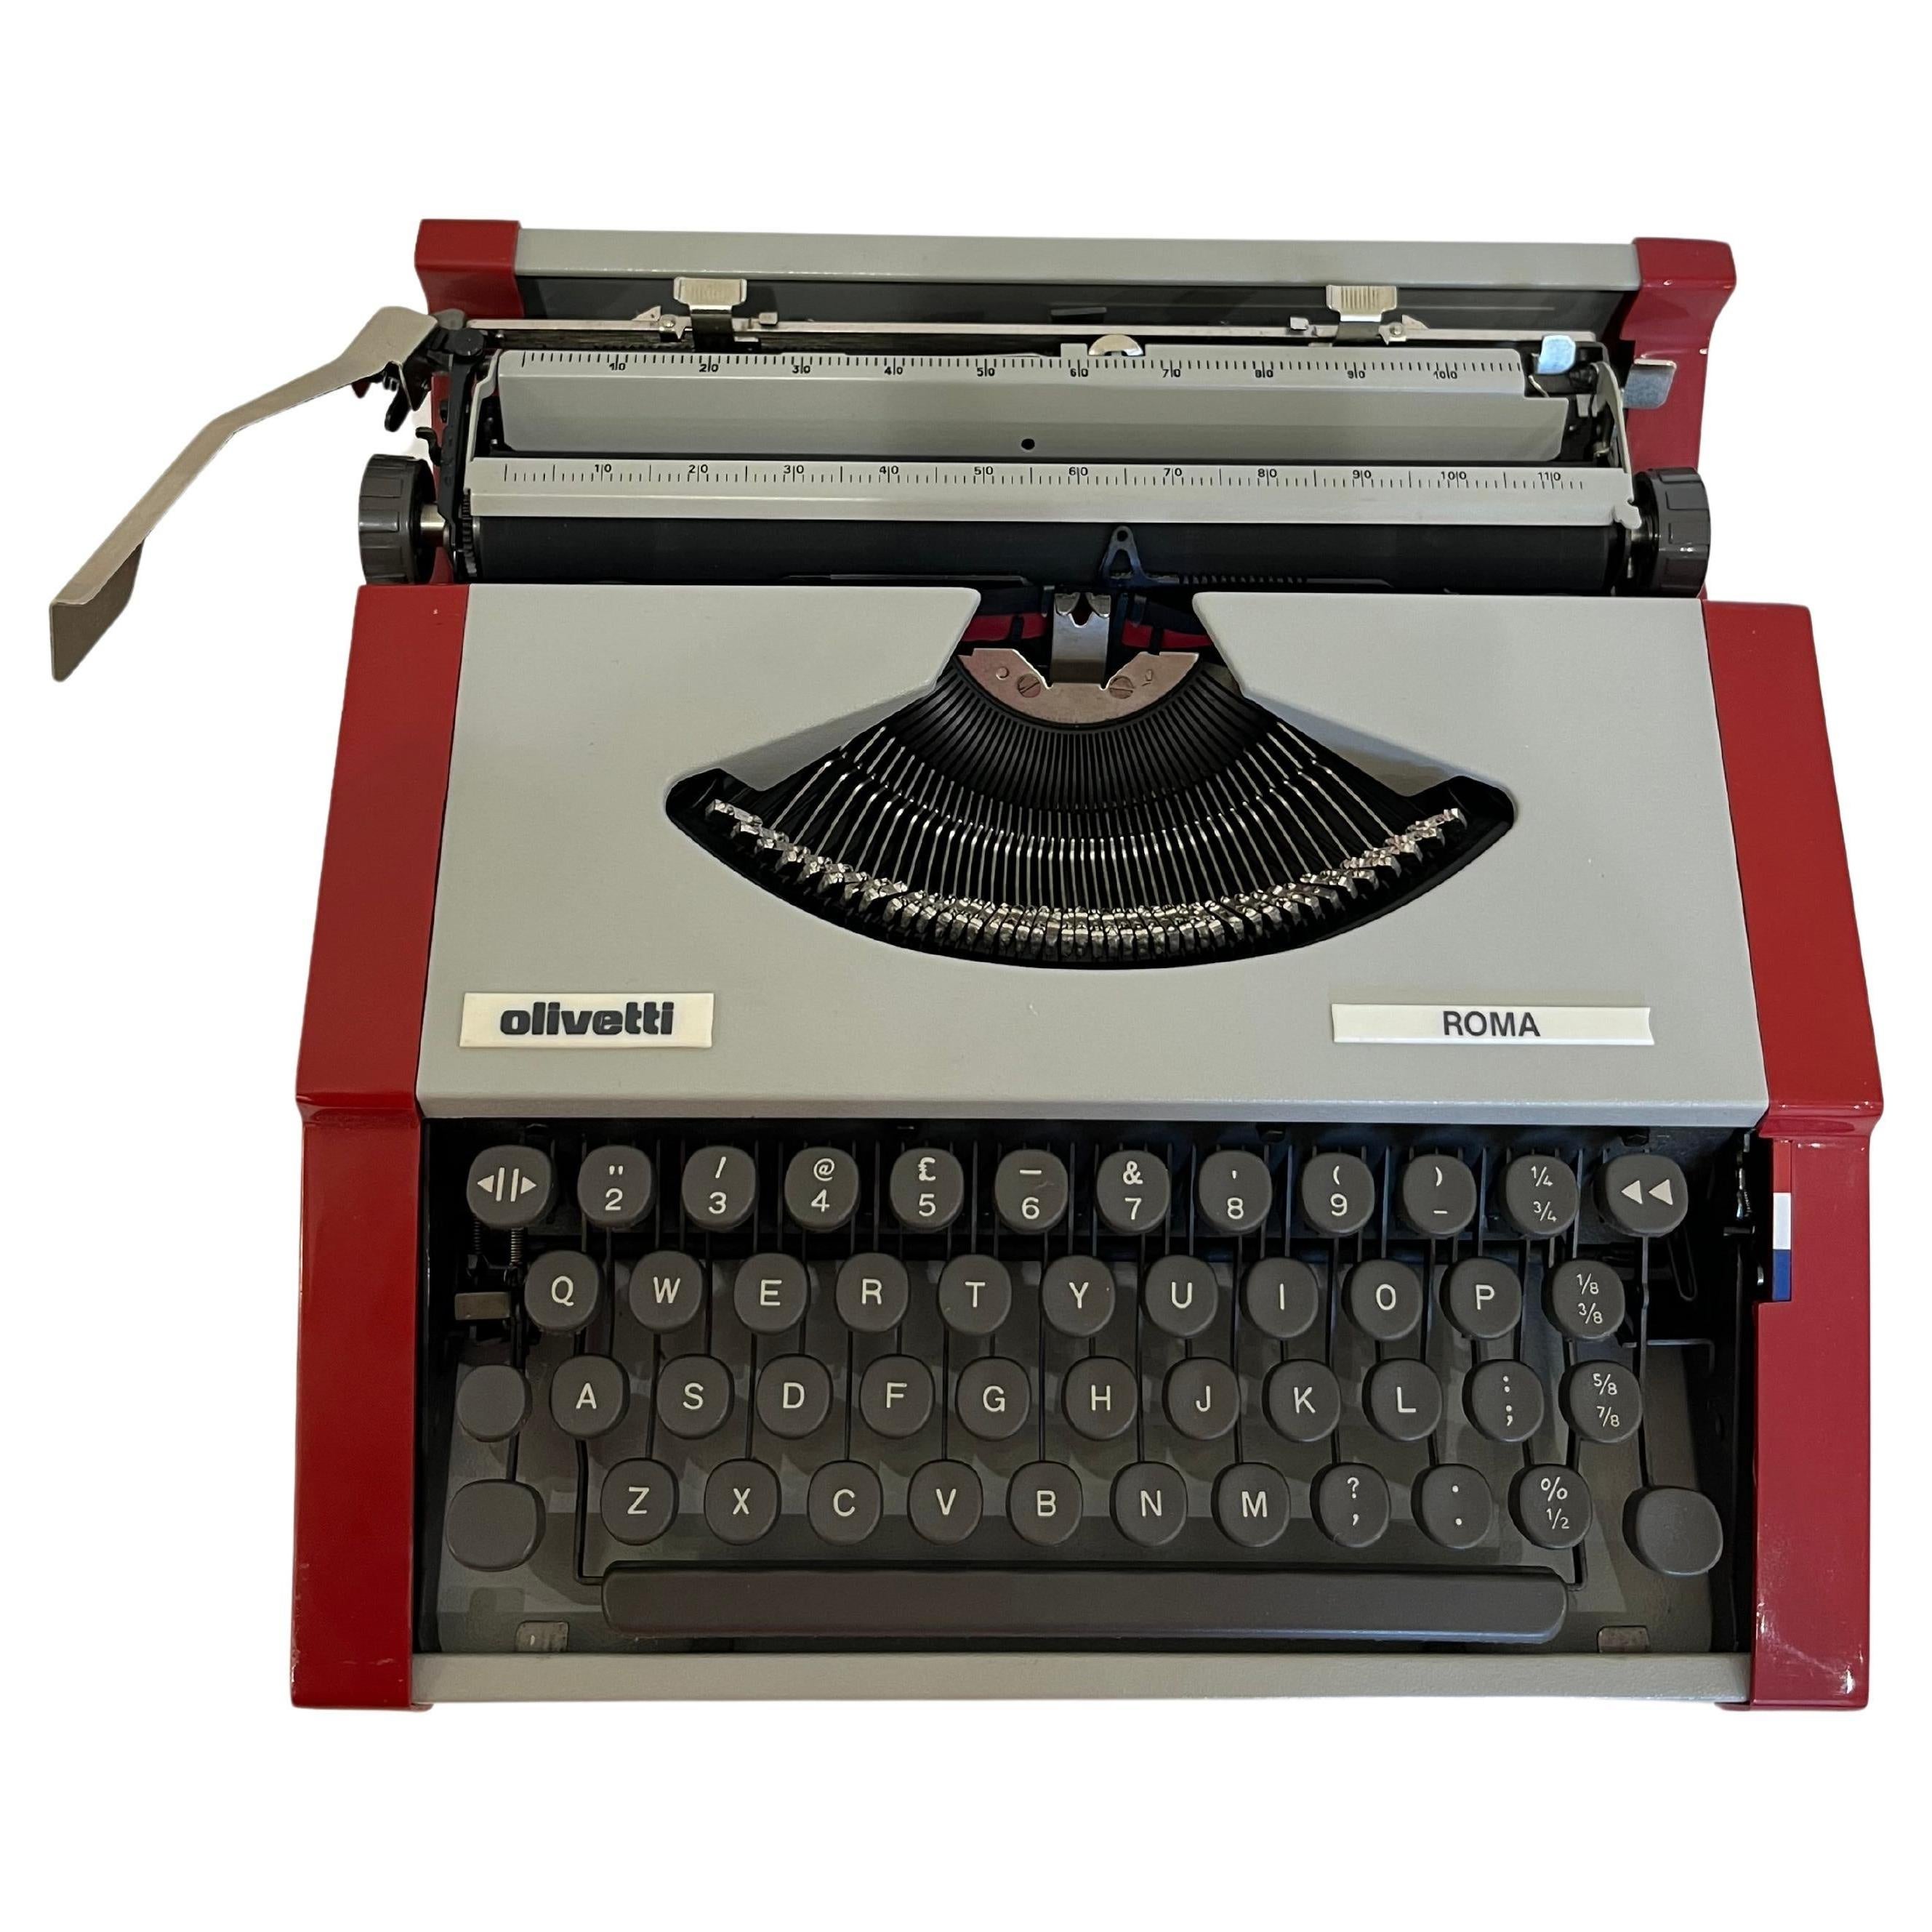 Machine à écrire portable Olivetti modèle Roma 1984
Produite, comme la Lettera 82, dans l'usine brésilienne d'Olivetti.
Intacte et fonctionnelle, équipée d'une housse de transport.

Caractéristiques : Machine à écrire manuelle portable.
Clavier : 42